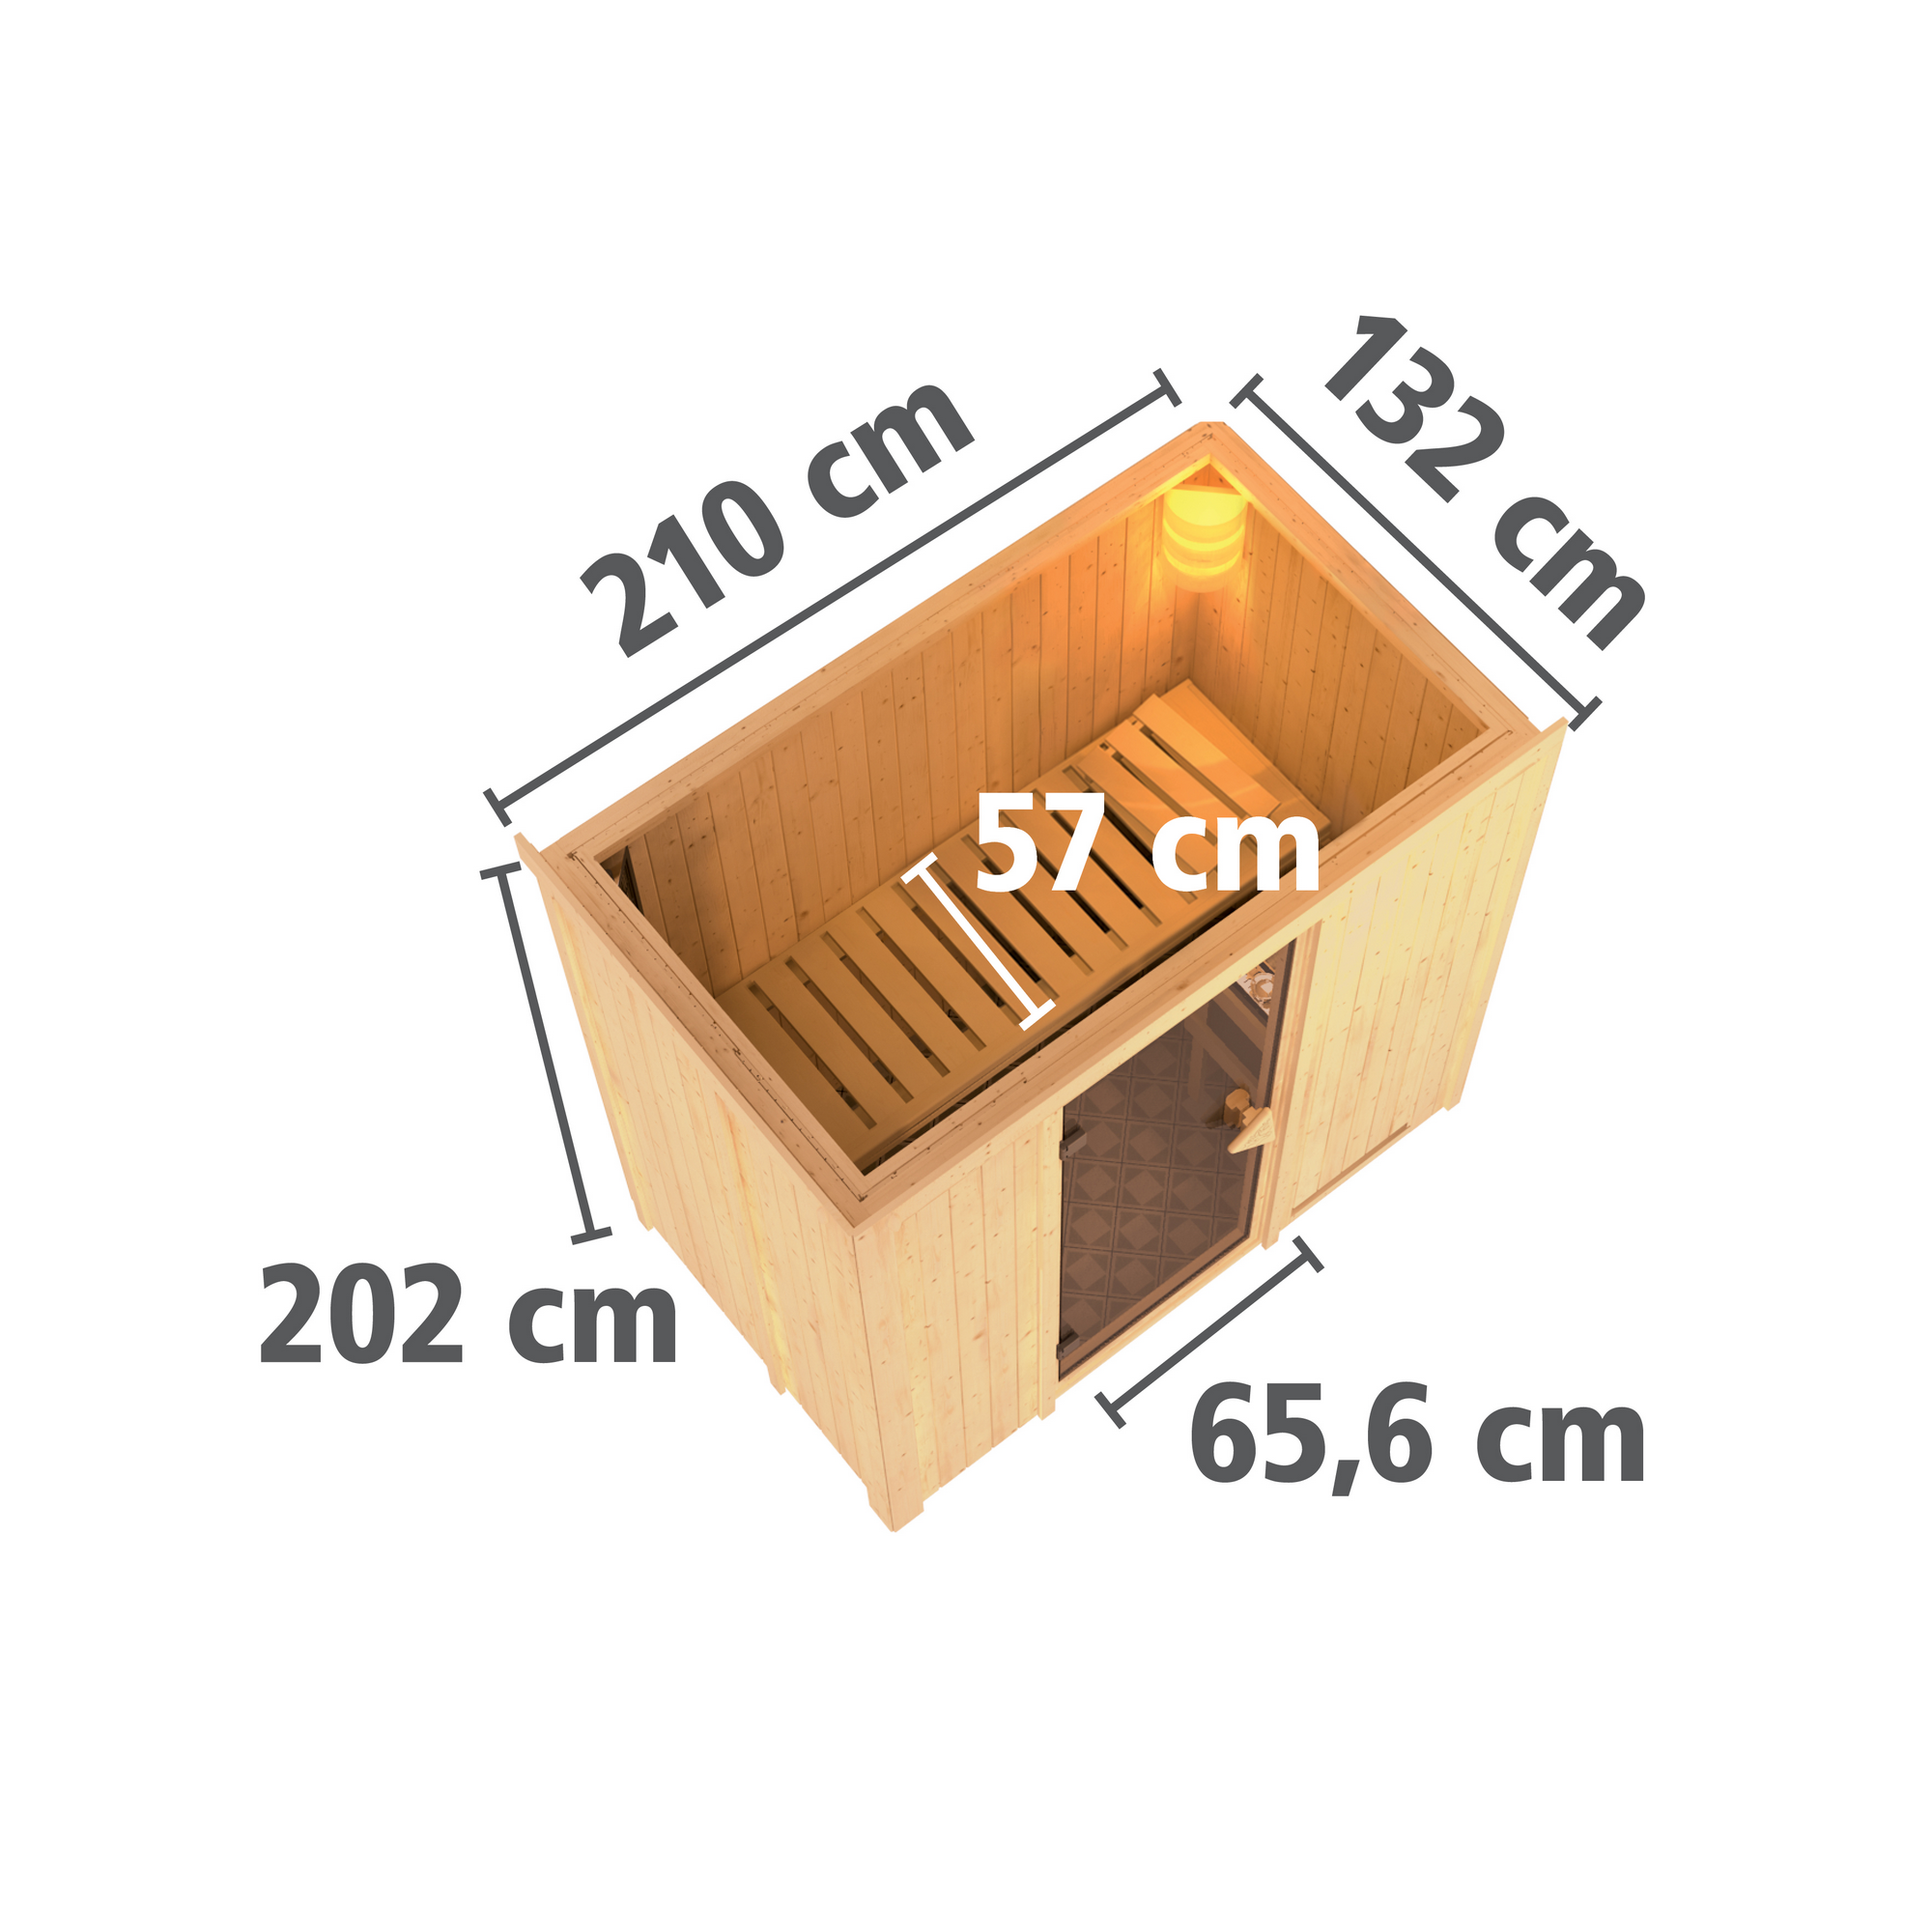 Elementsauna 'Aina' naturbelassen mit Kranz und bronzierter Tür 9 kW Ofen externe Steuerung Easy 210 x 132 x 202 cm + product picture